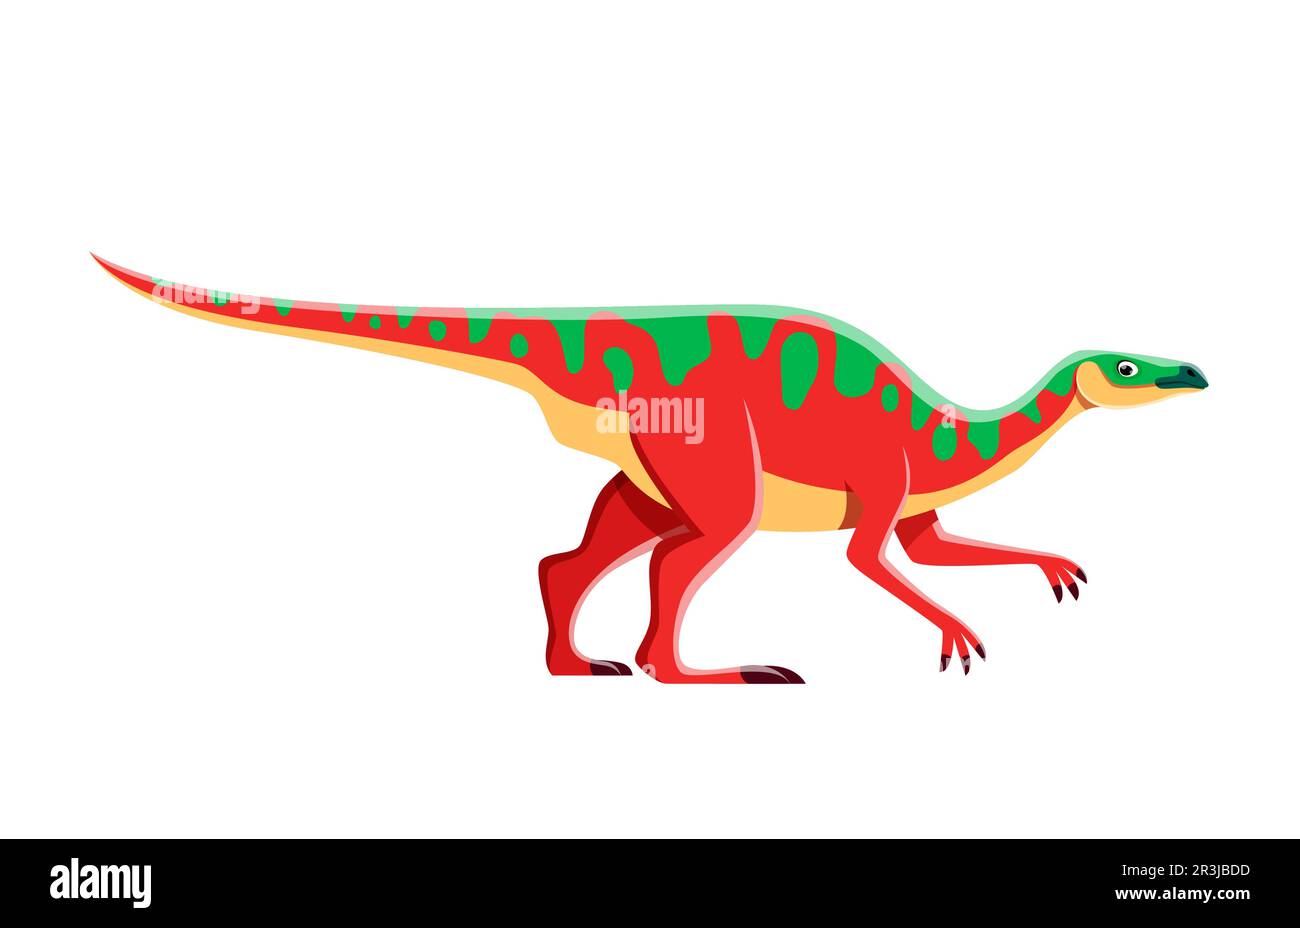 Dessin animé Anatotitan personnage de dinosaure, dino jouet ou Jurassic Park drôle mignon vecteur animal. Anatotitan dinosaure ou Edmontosaurus annectens reptile jurassique préhistorique avec visage souriant Illustration de Vecteur